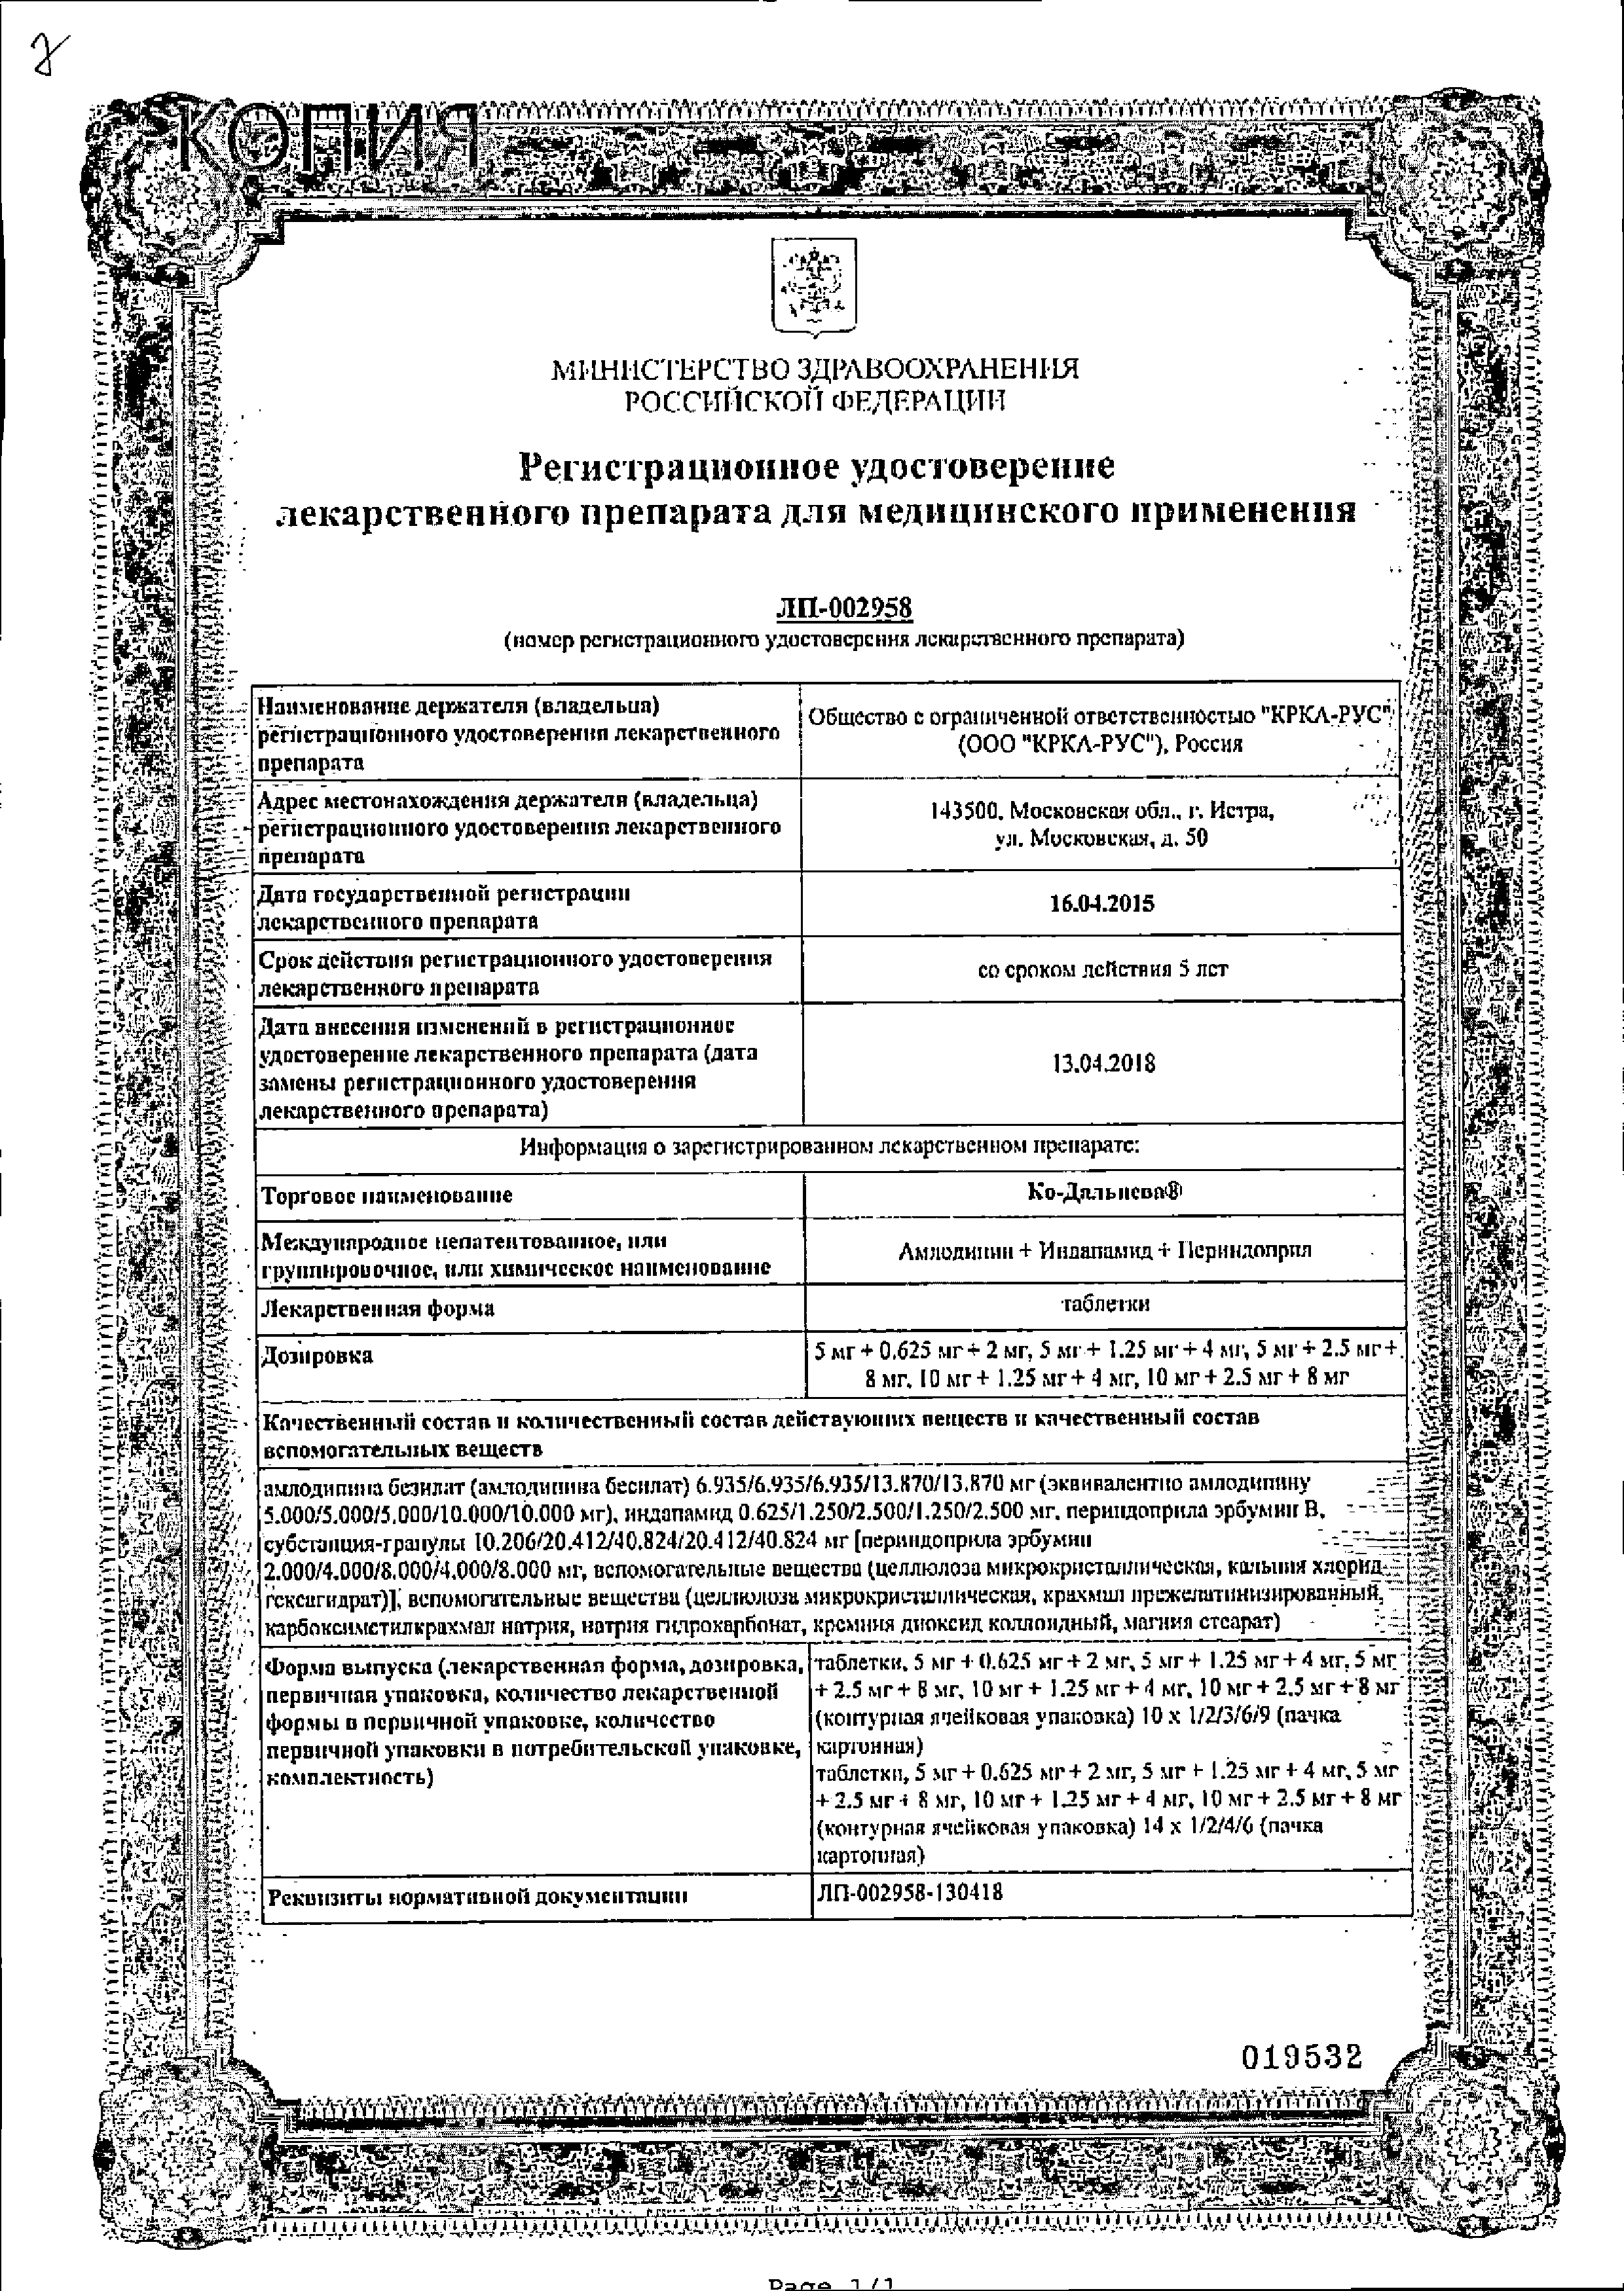 Ко-Дальнева сертификат